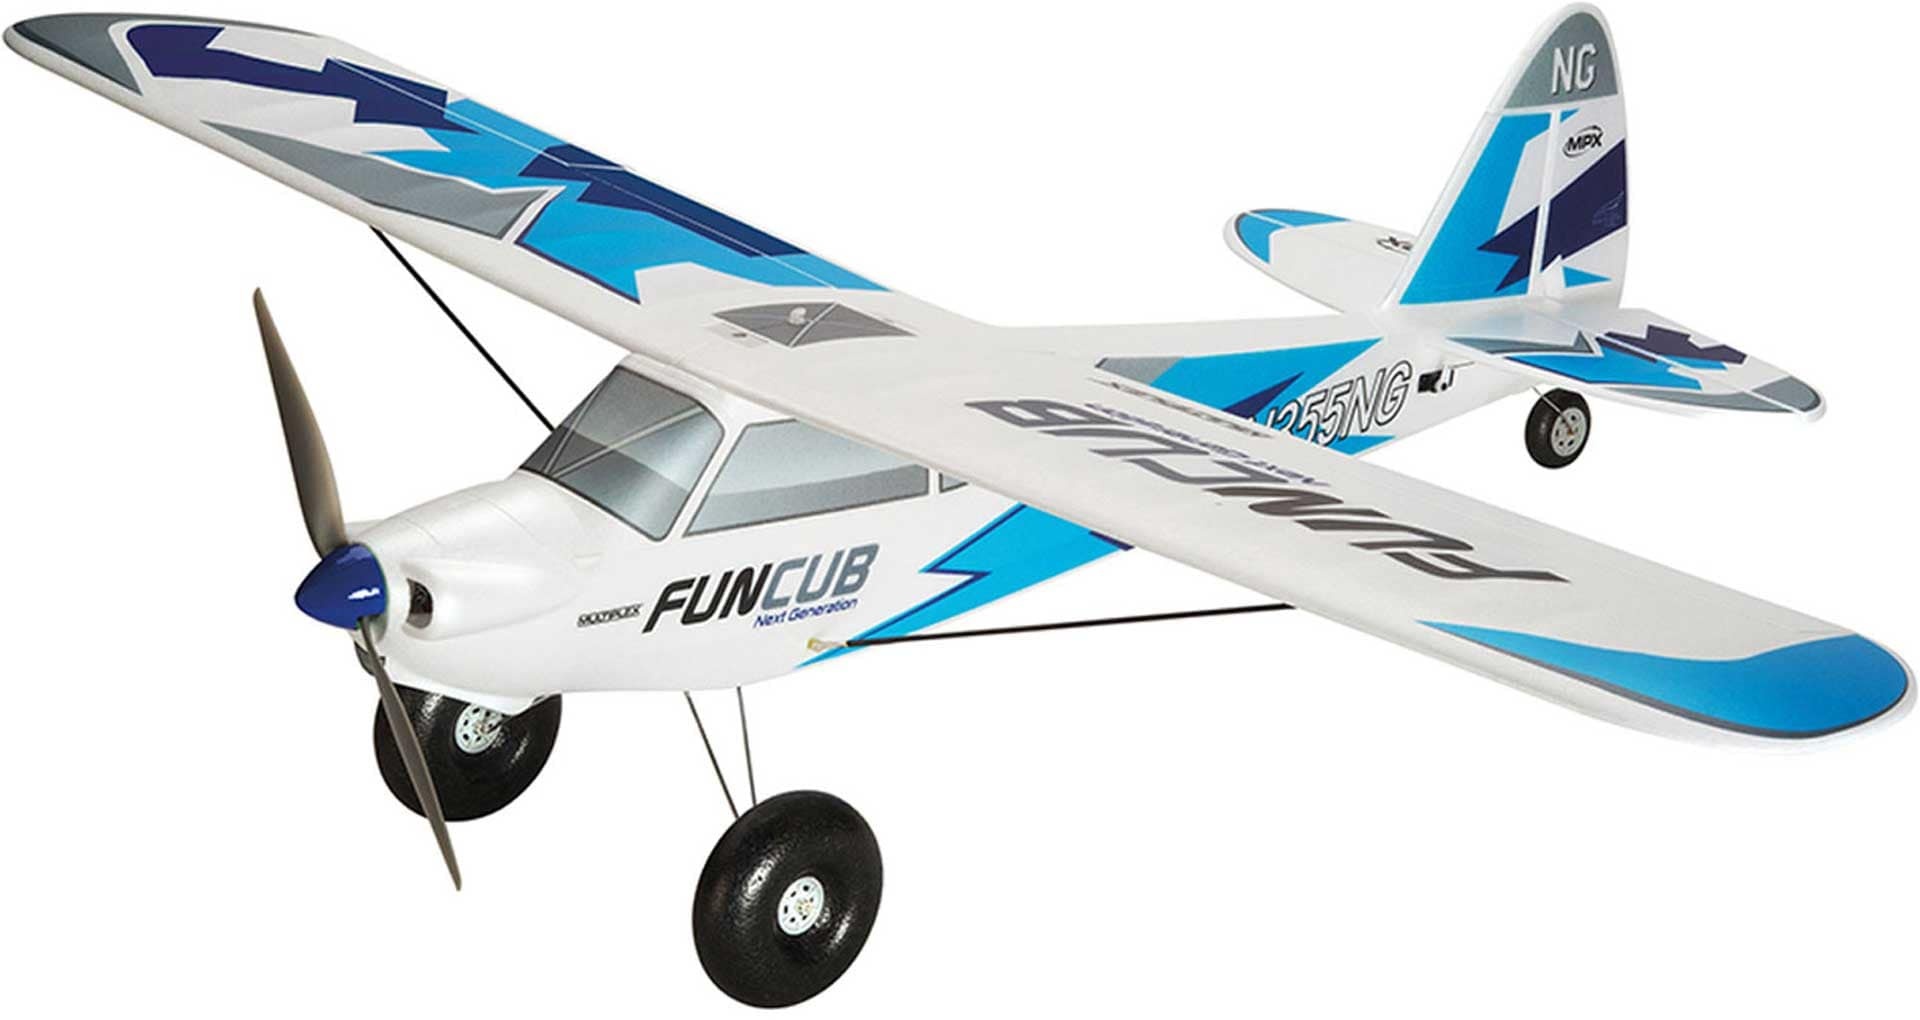 Multiplex RC Motorflugmodell RR FunCub NG blau Modellflugzeug (Motorflugzeug)